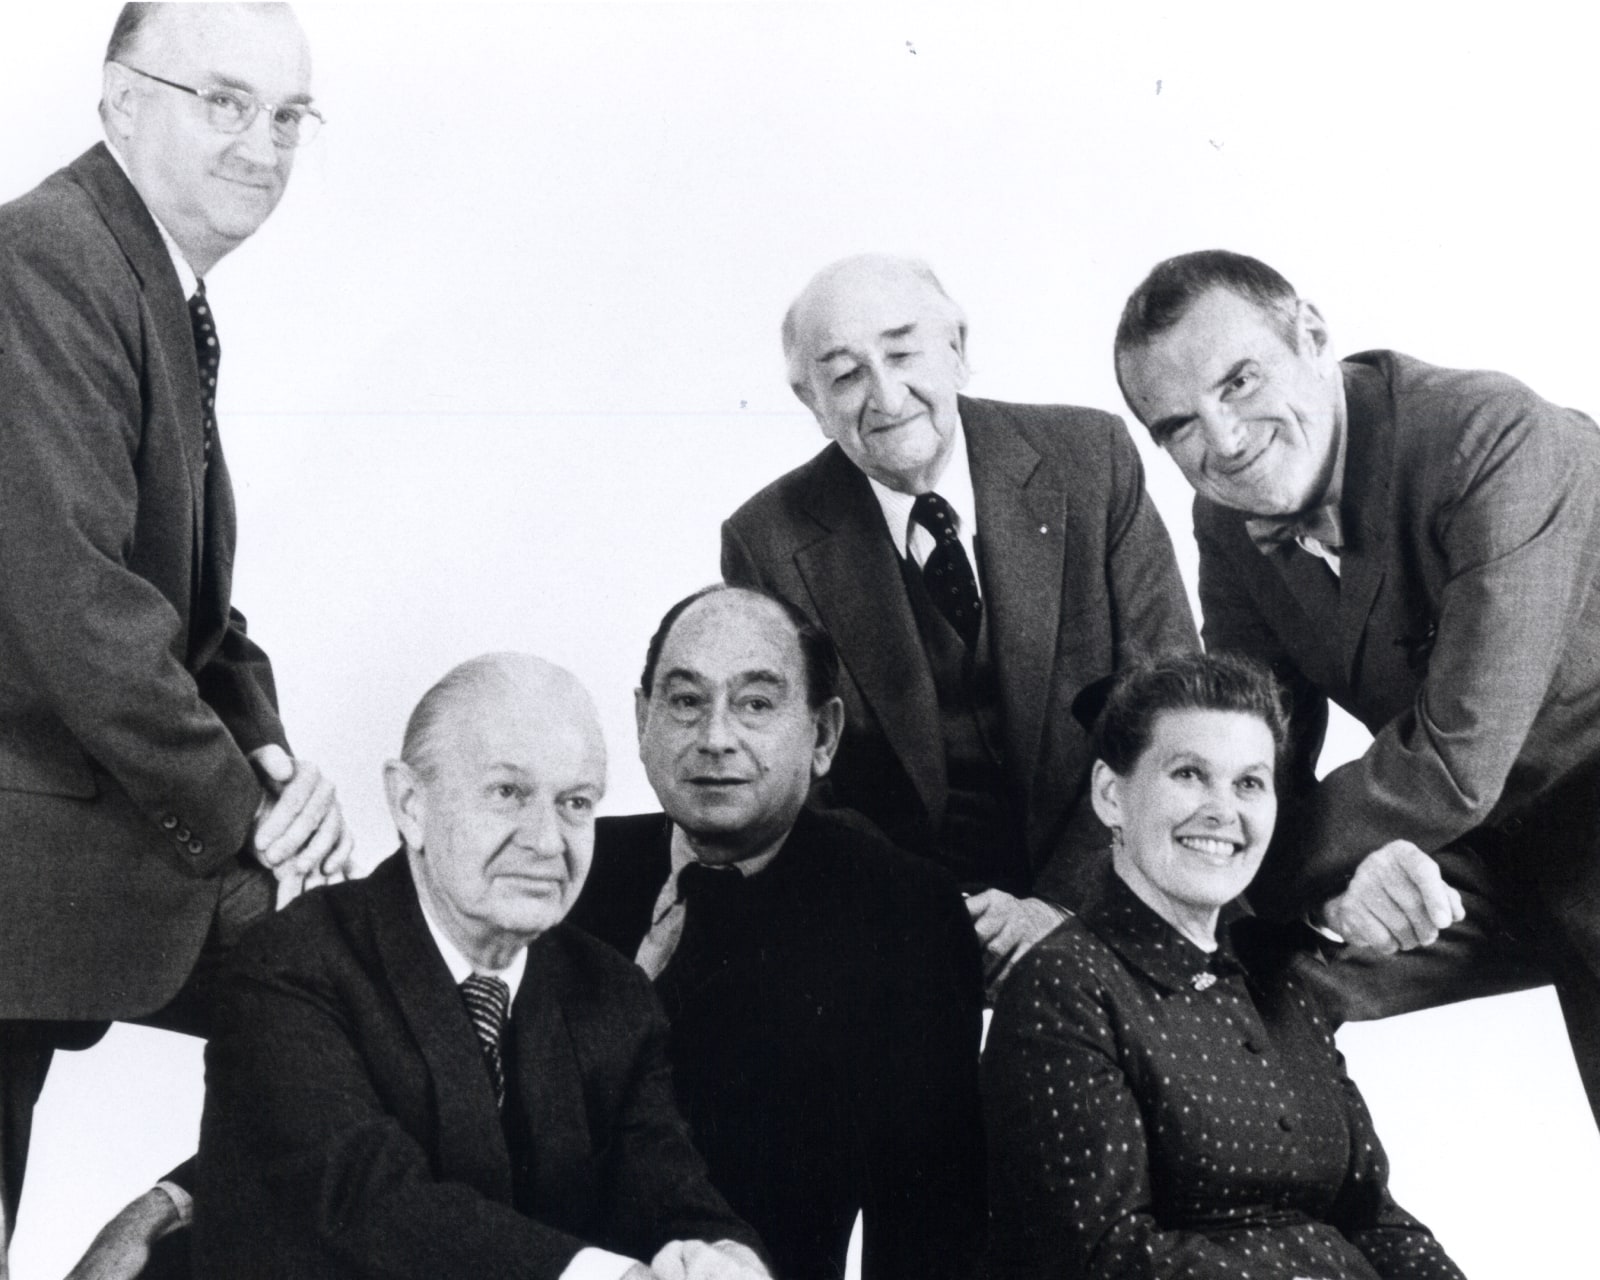 Le fondateur D. J. De Pree, le directeur de la création George Nelson et les designers Robert Propst, Alexander Girard, Ray et Charles Eames.